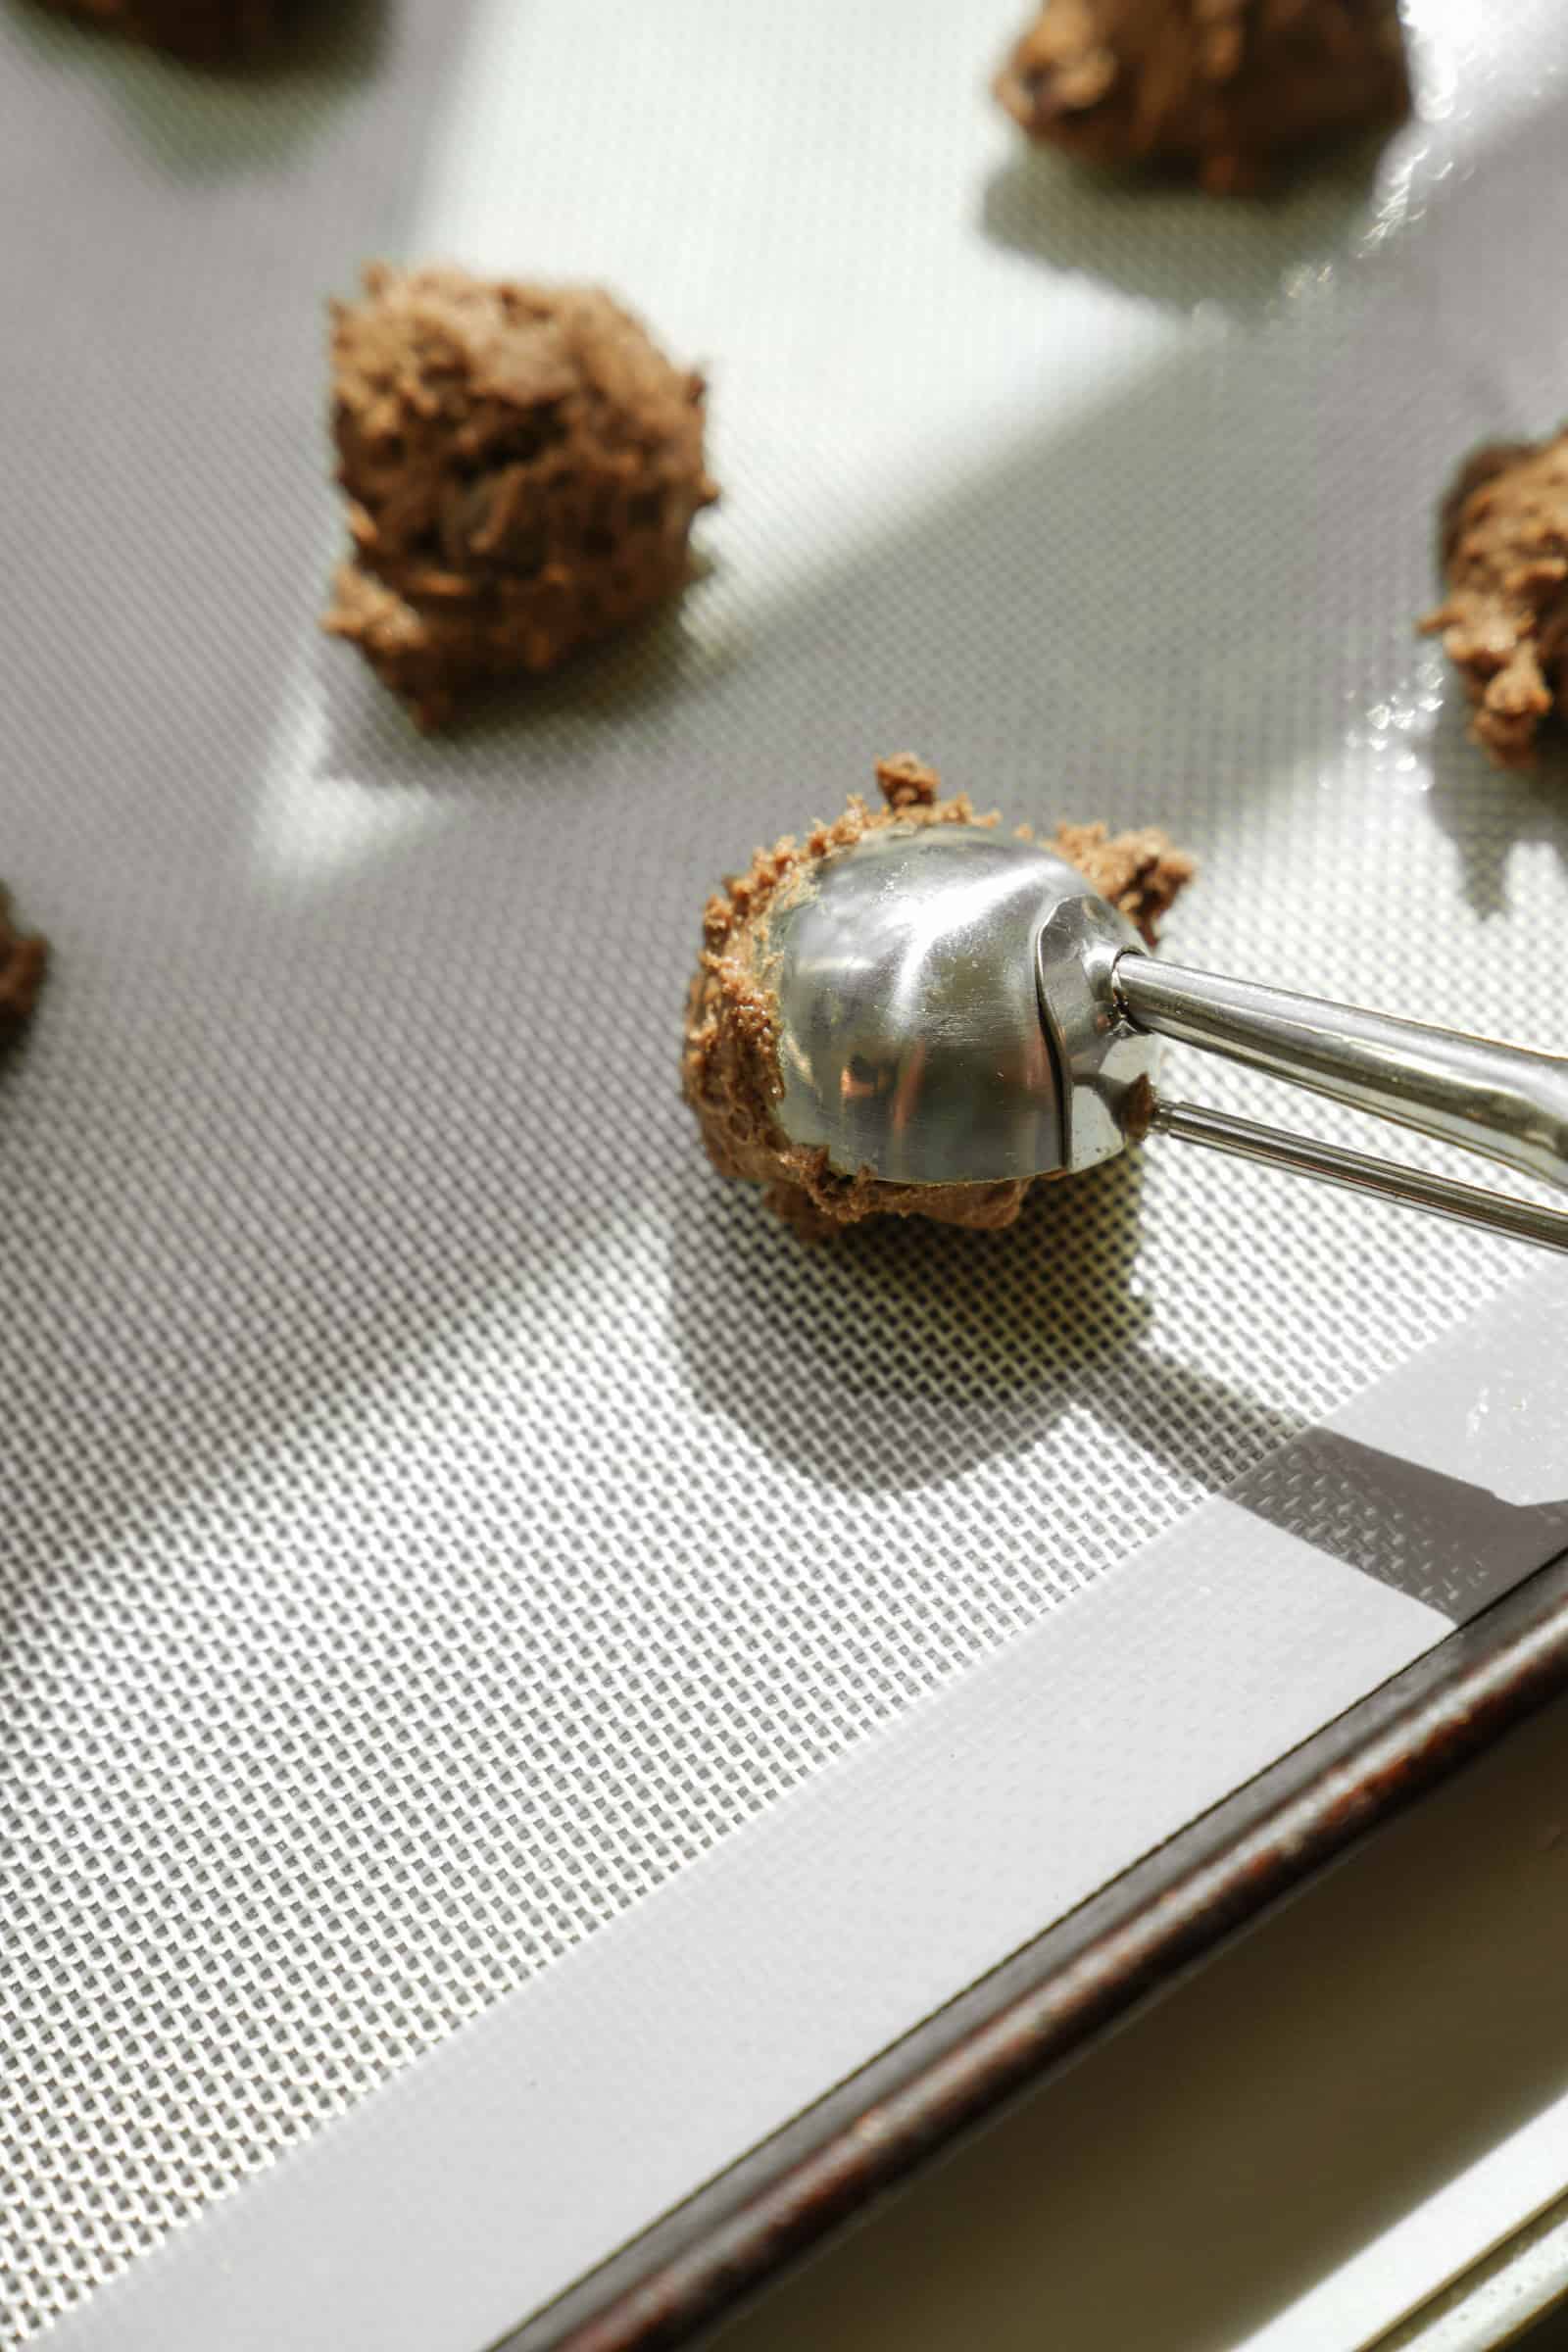 Ice cream scoop scooping dough onto baking sheet for vegan cookies